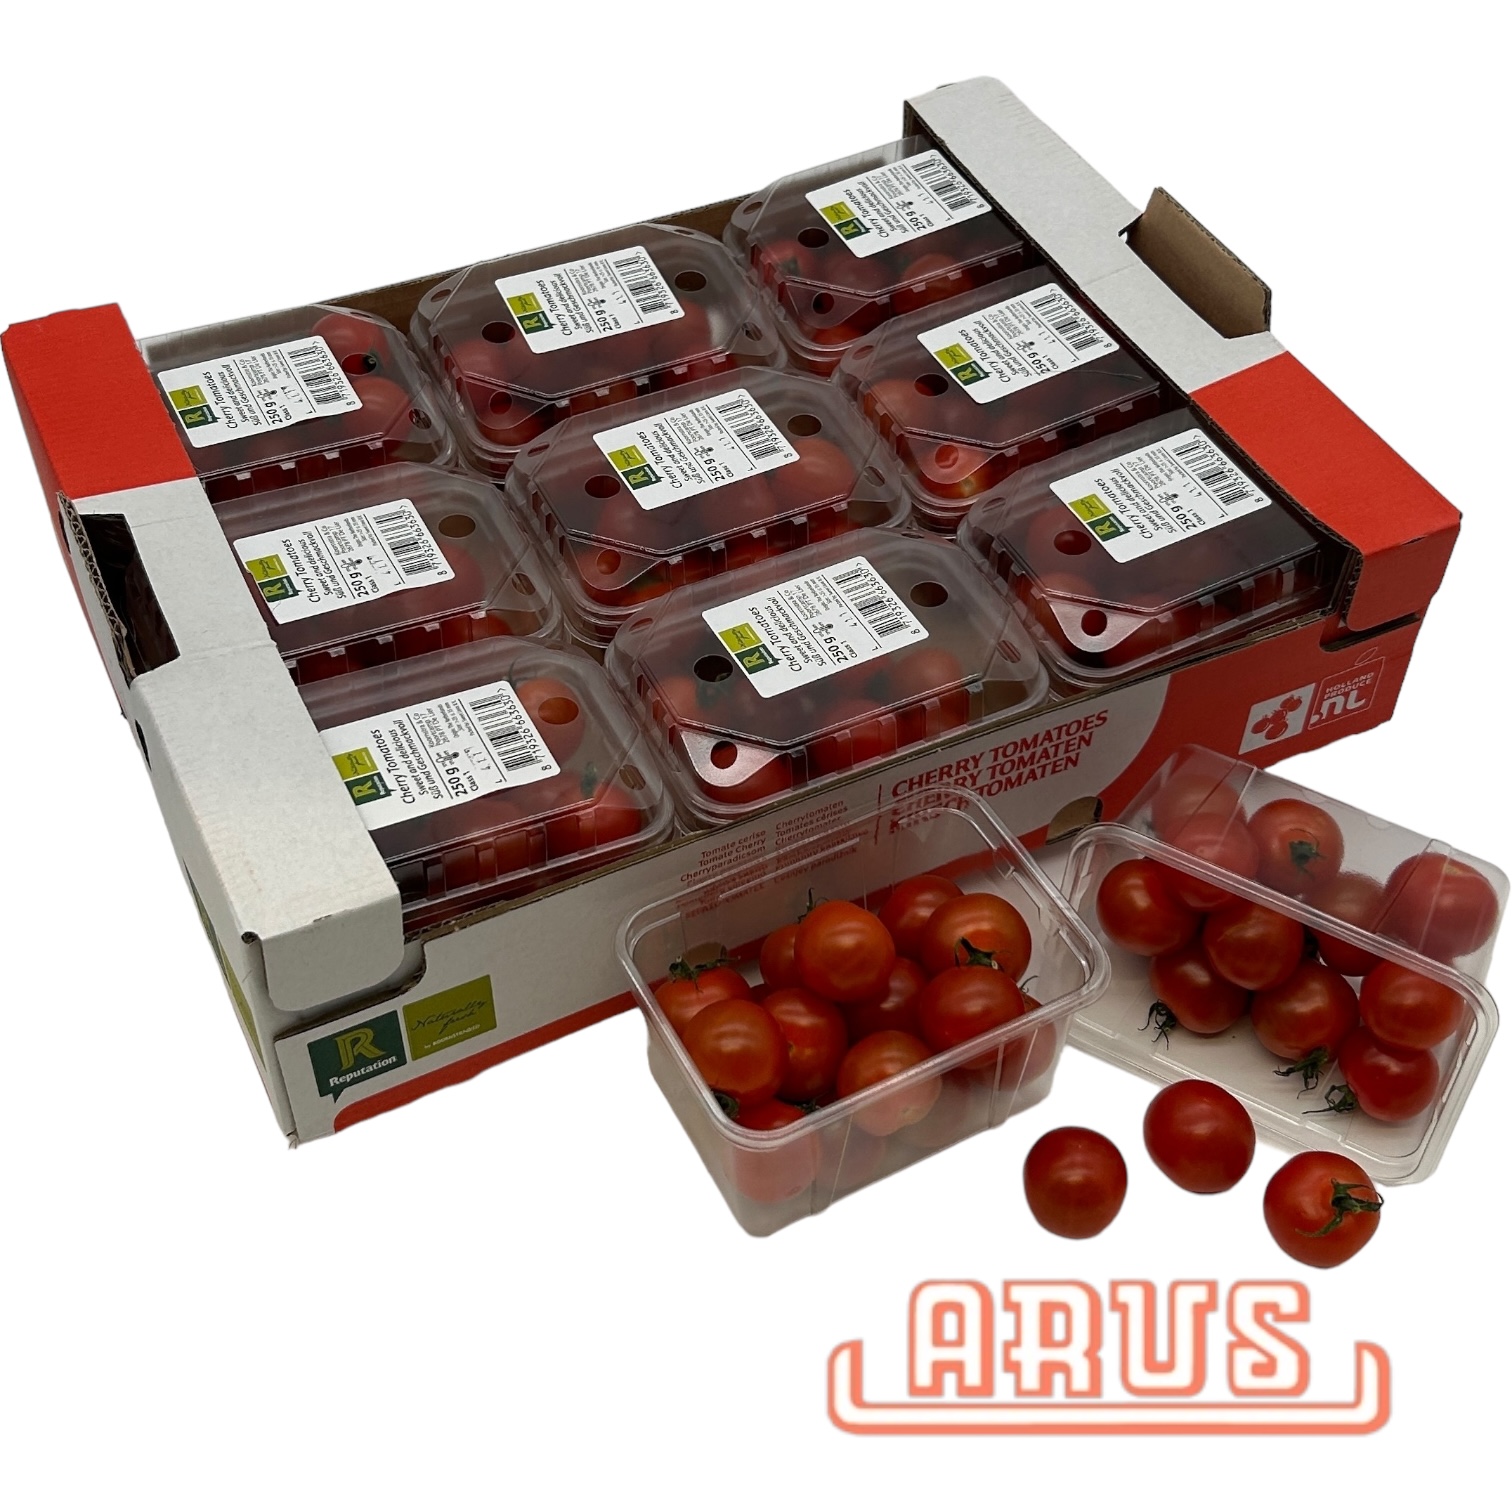 Cherrytomaten "rot" 9 x 250g - Schale/niederl. -